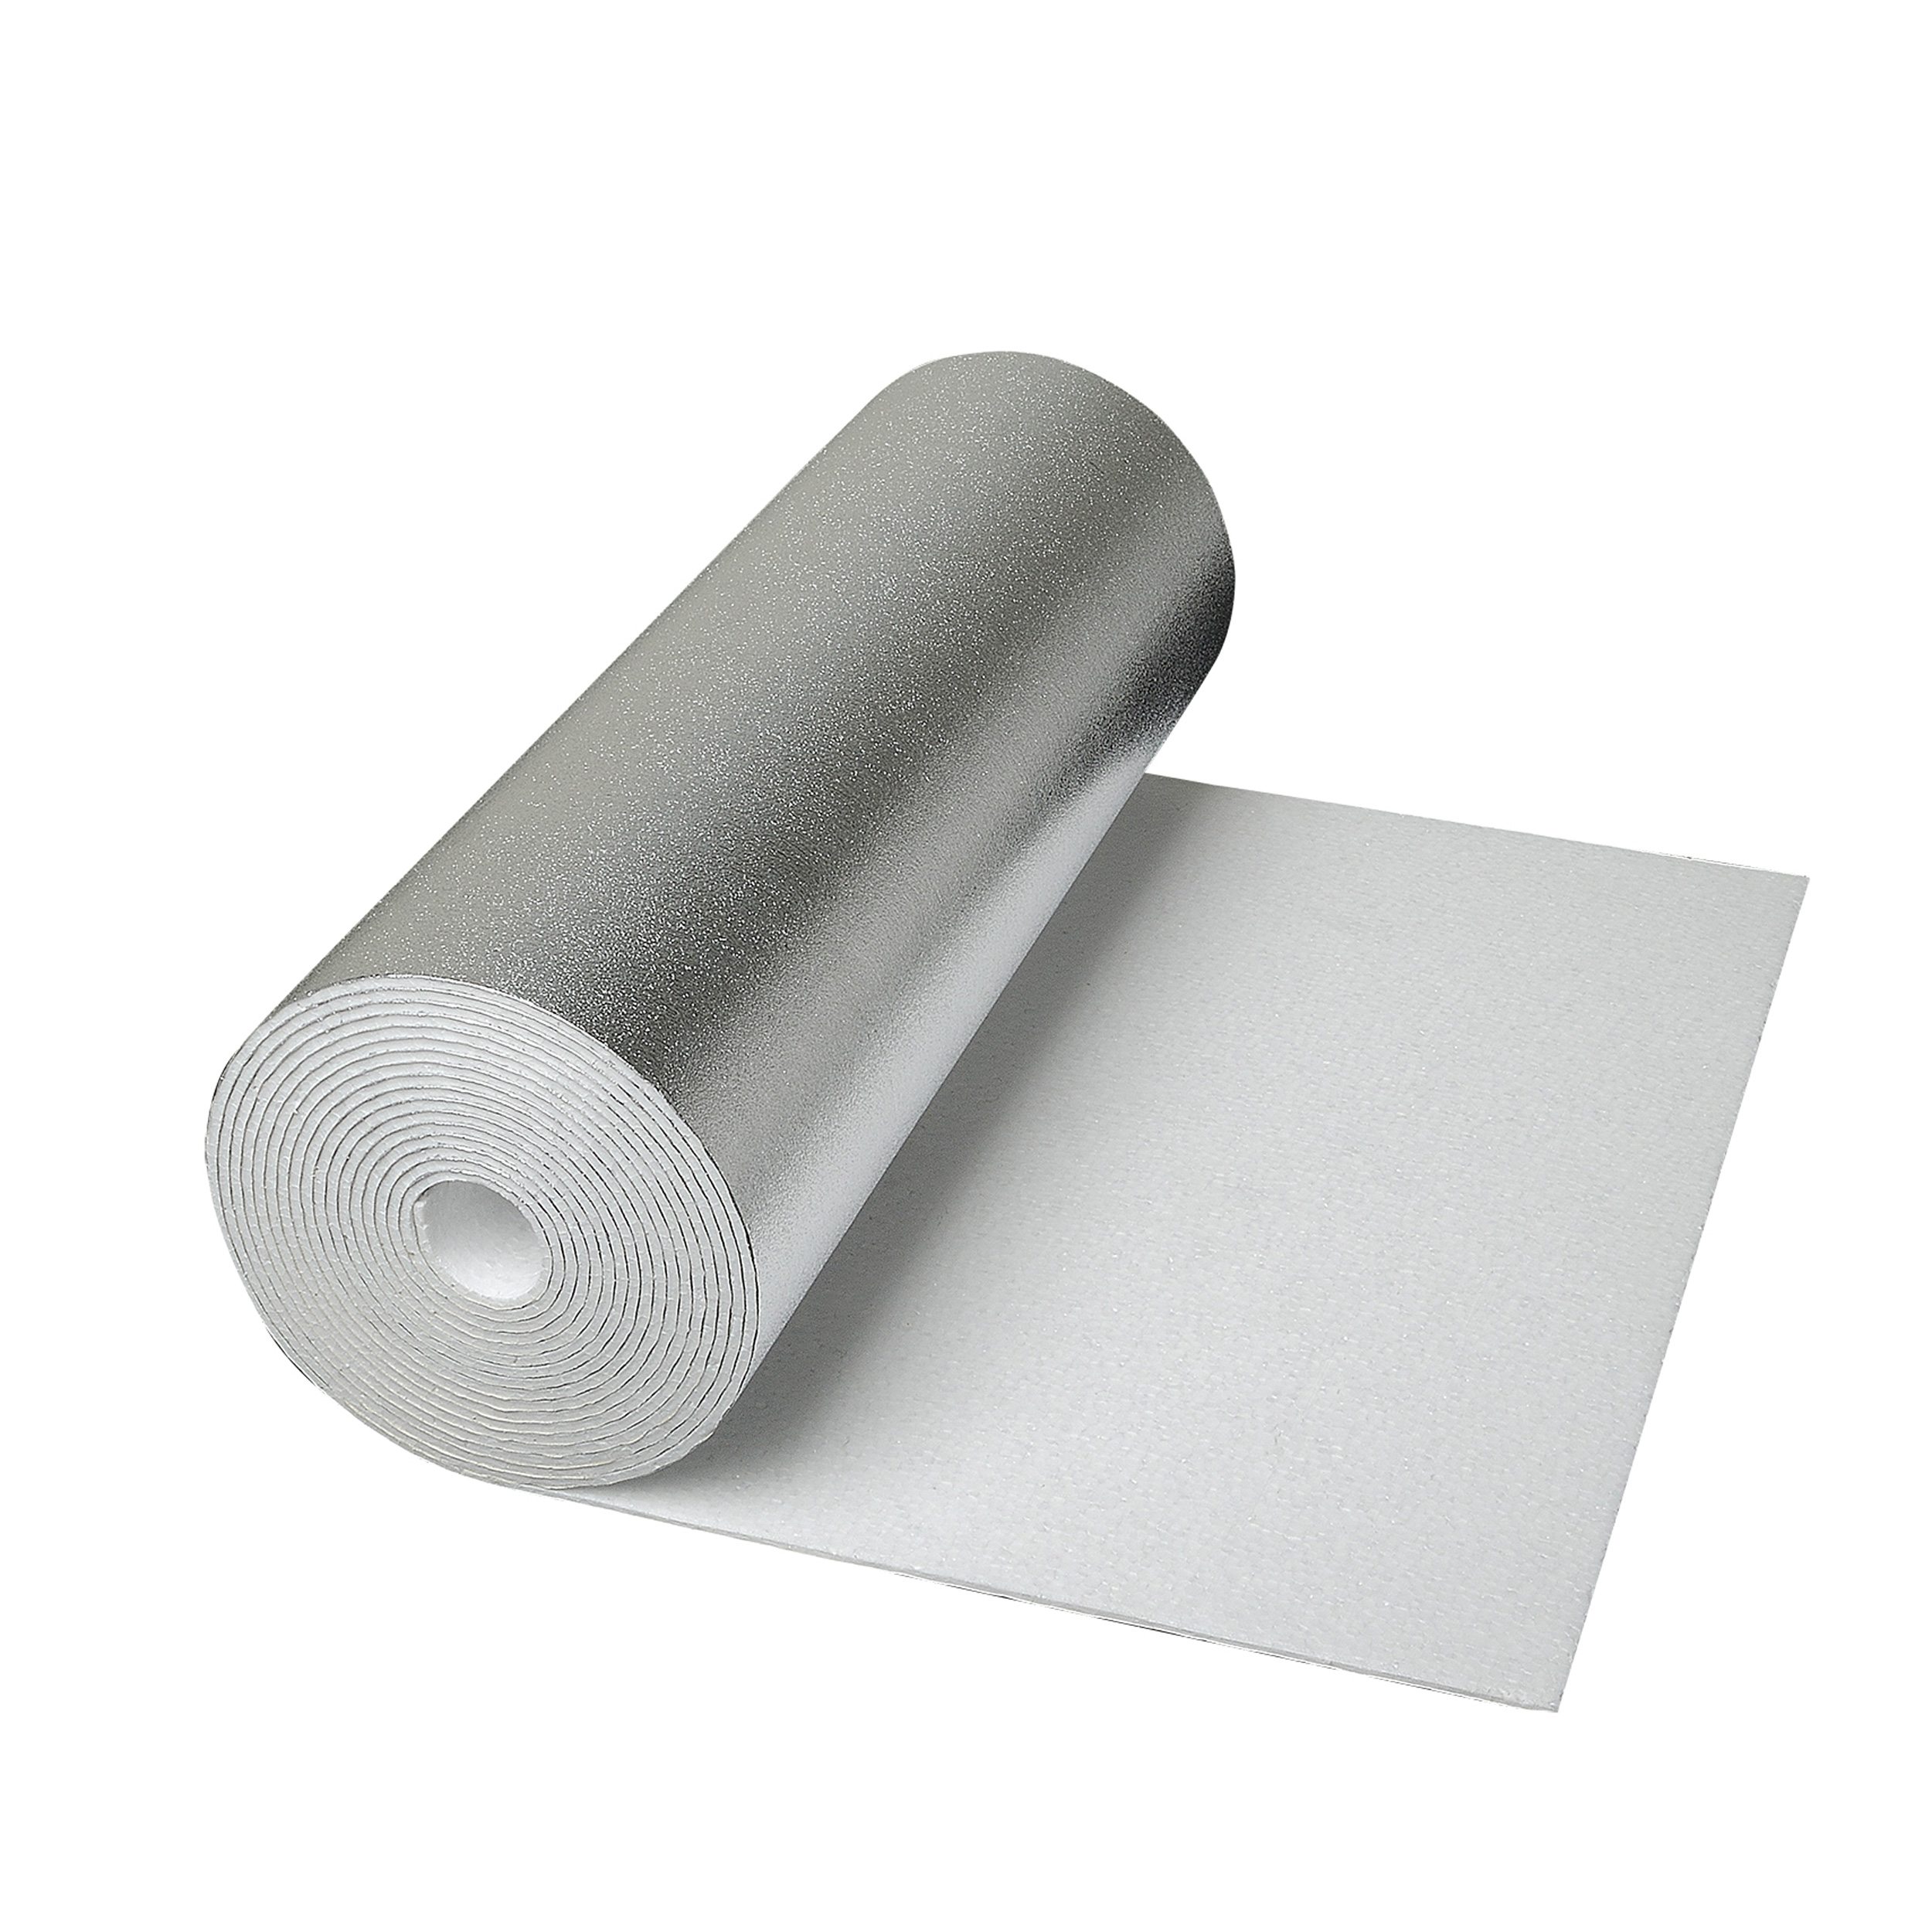 CLIMAPOR Isolant sous papier peint contrecollé alu - polystyrène - 5 m x 0,5 m x ~4 mm